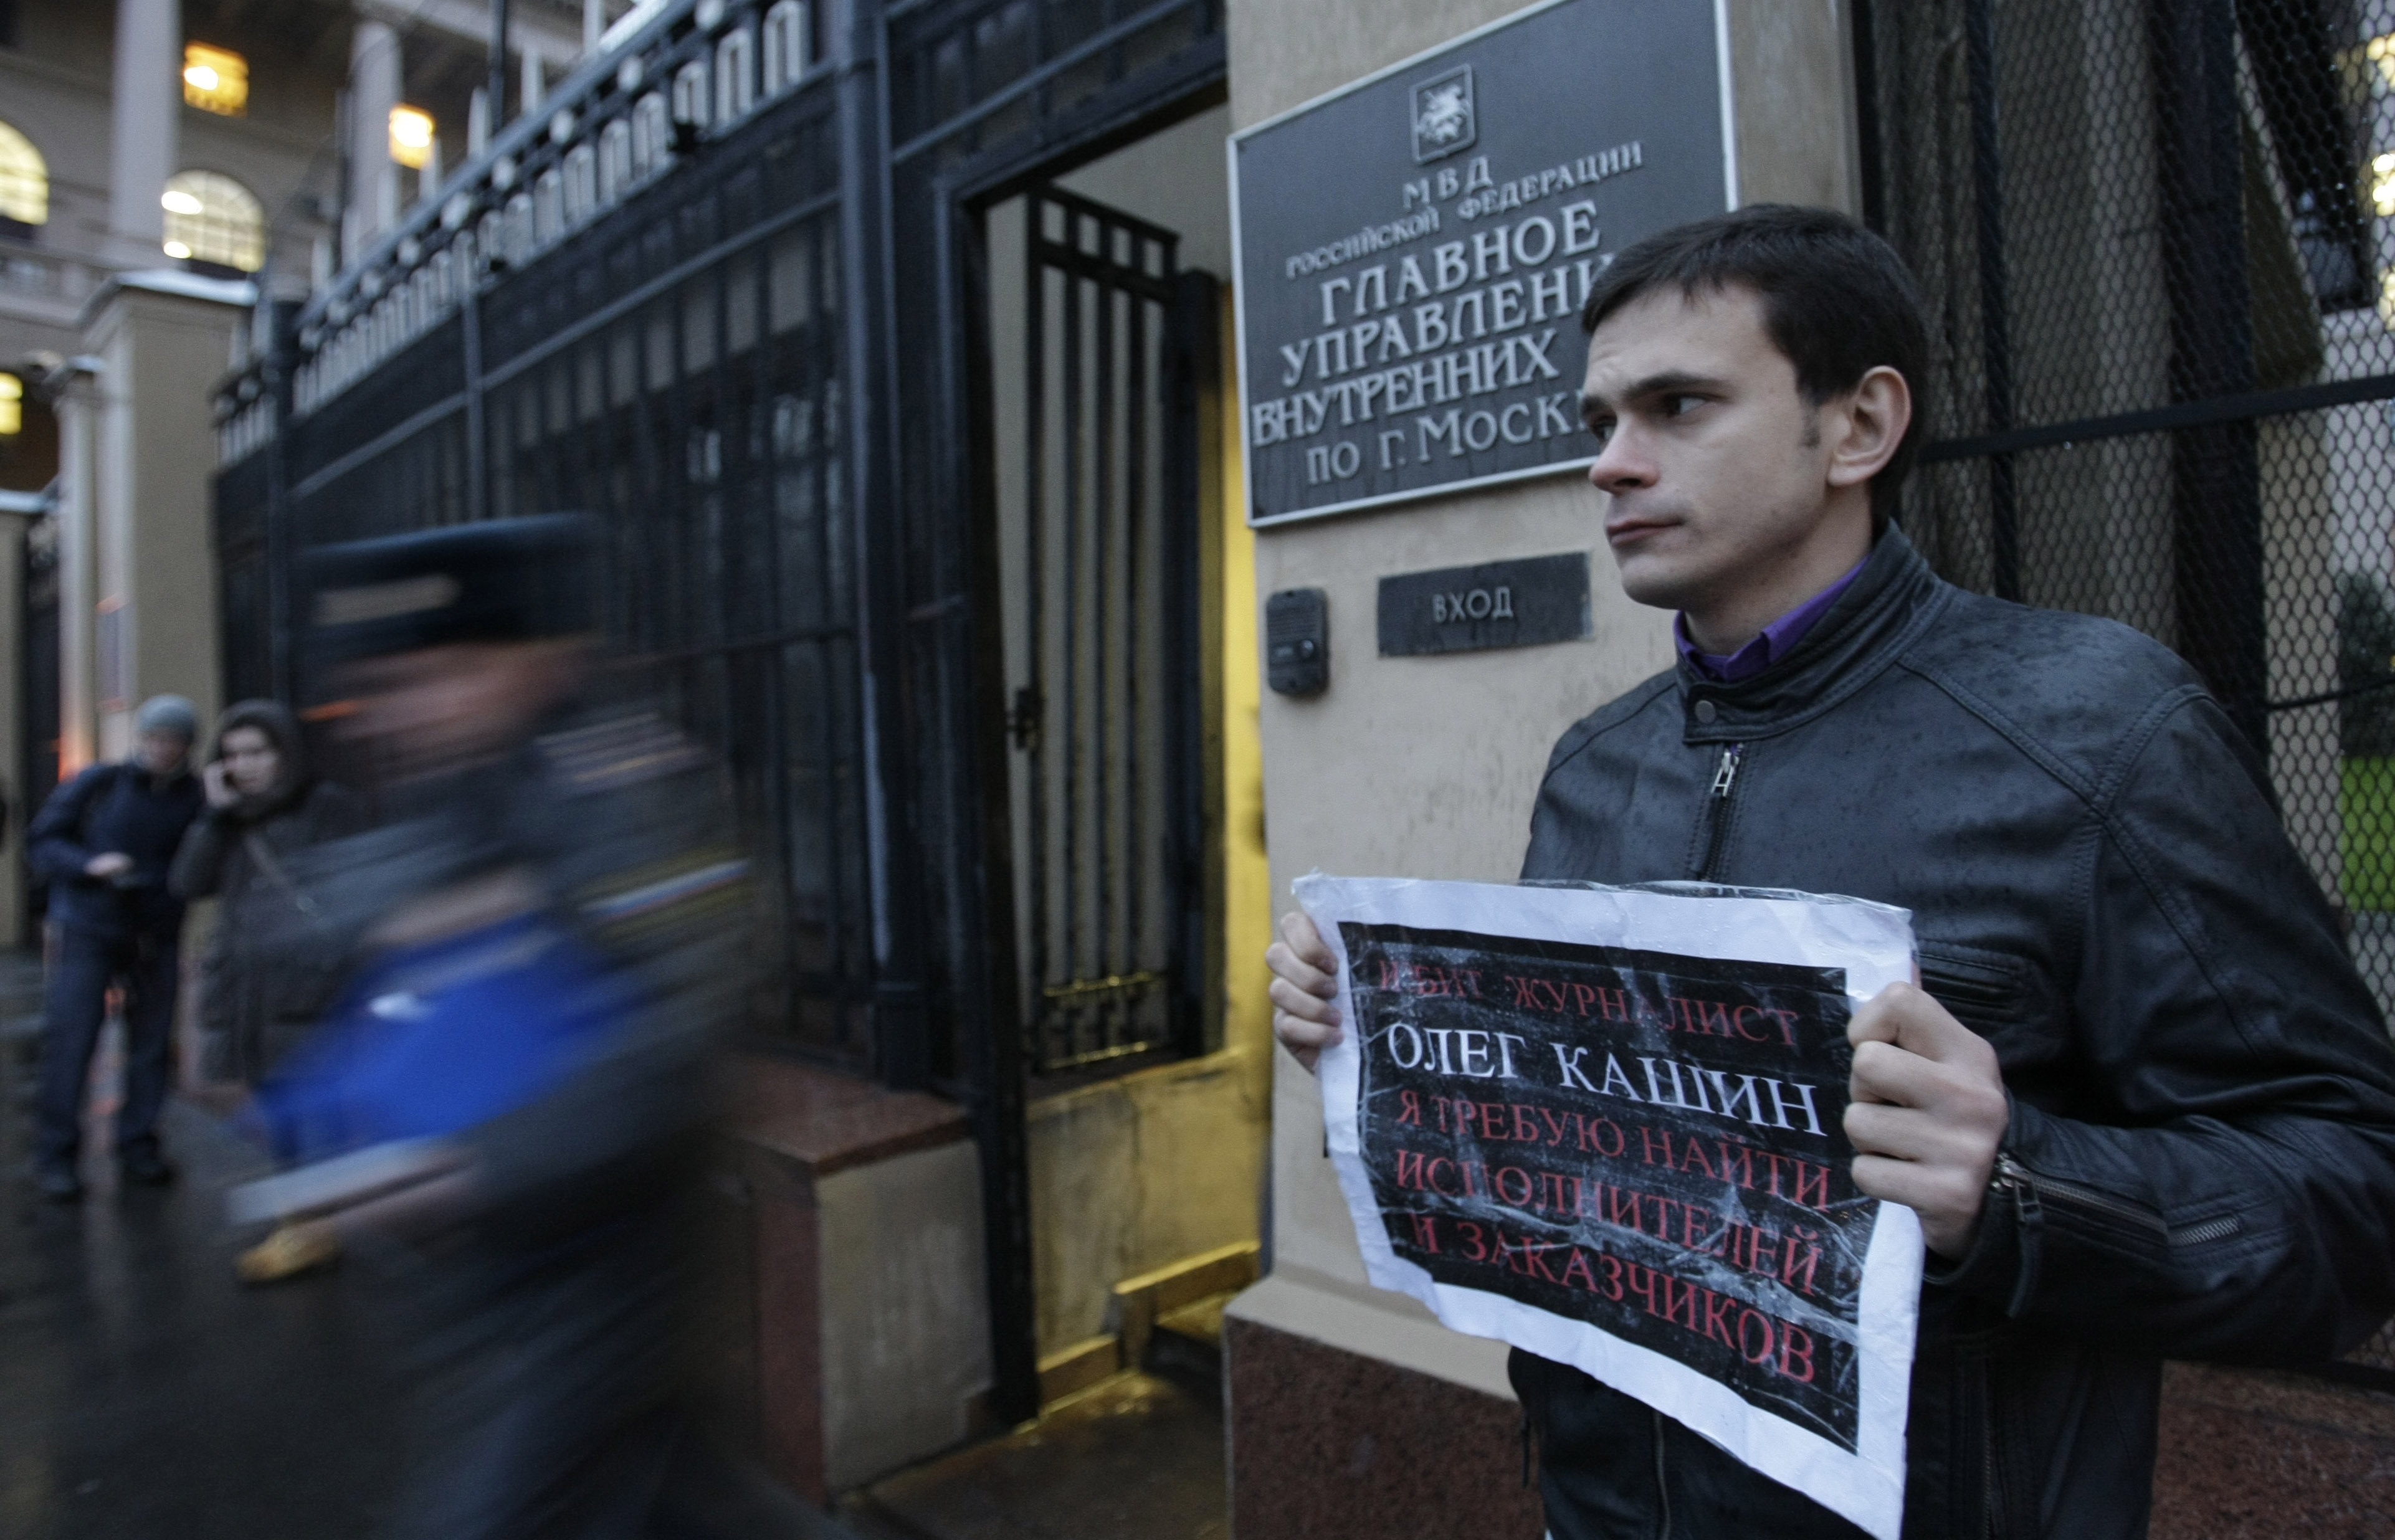 Ρωσία: Πέθανε ο δημοσιογράφος που είχε ξυλοκοπηθεί το 2008